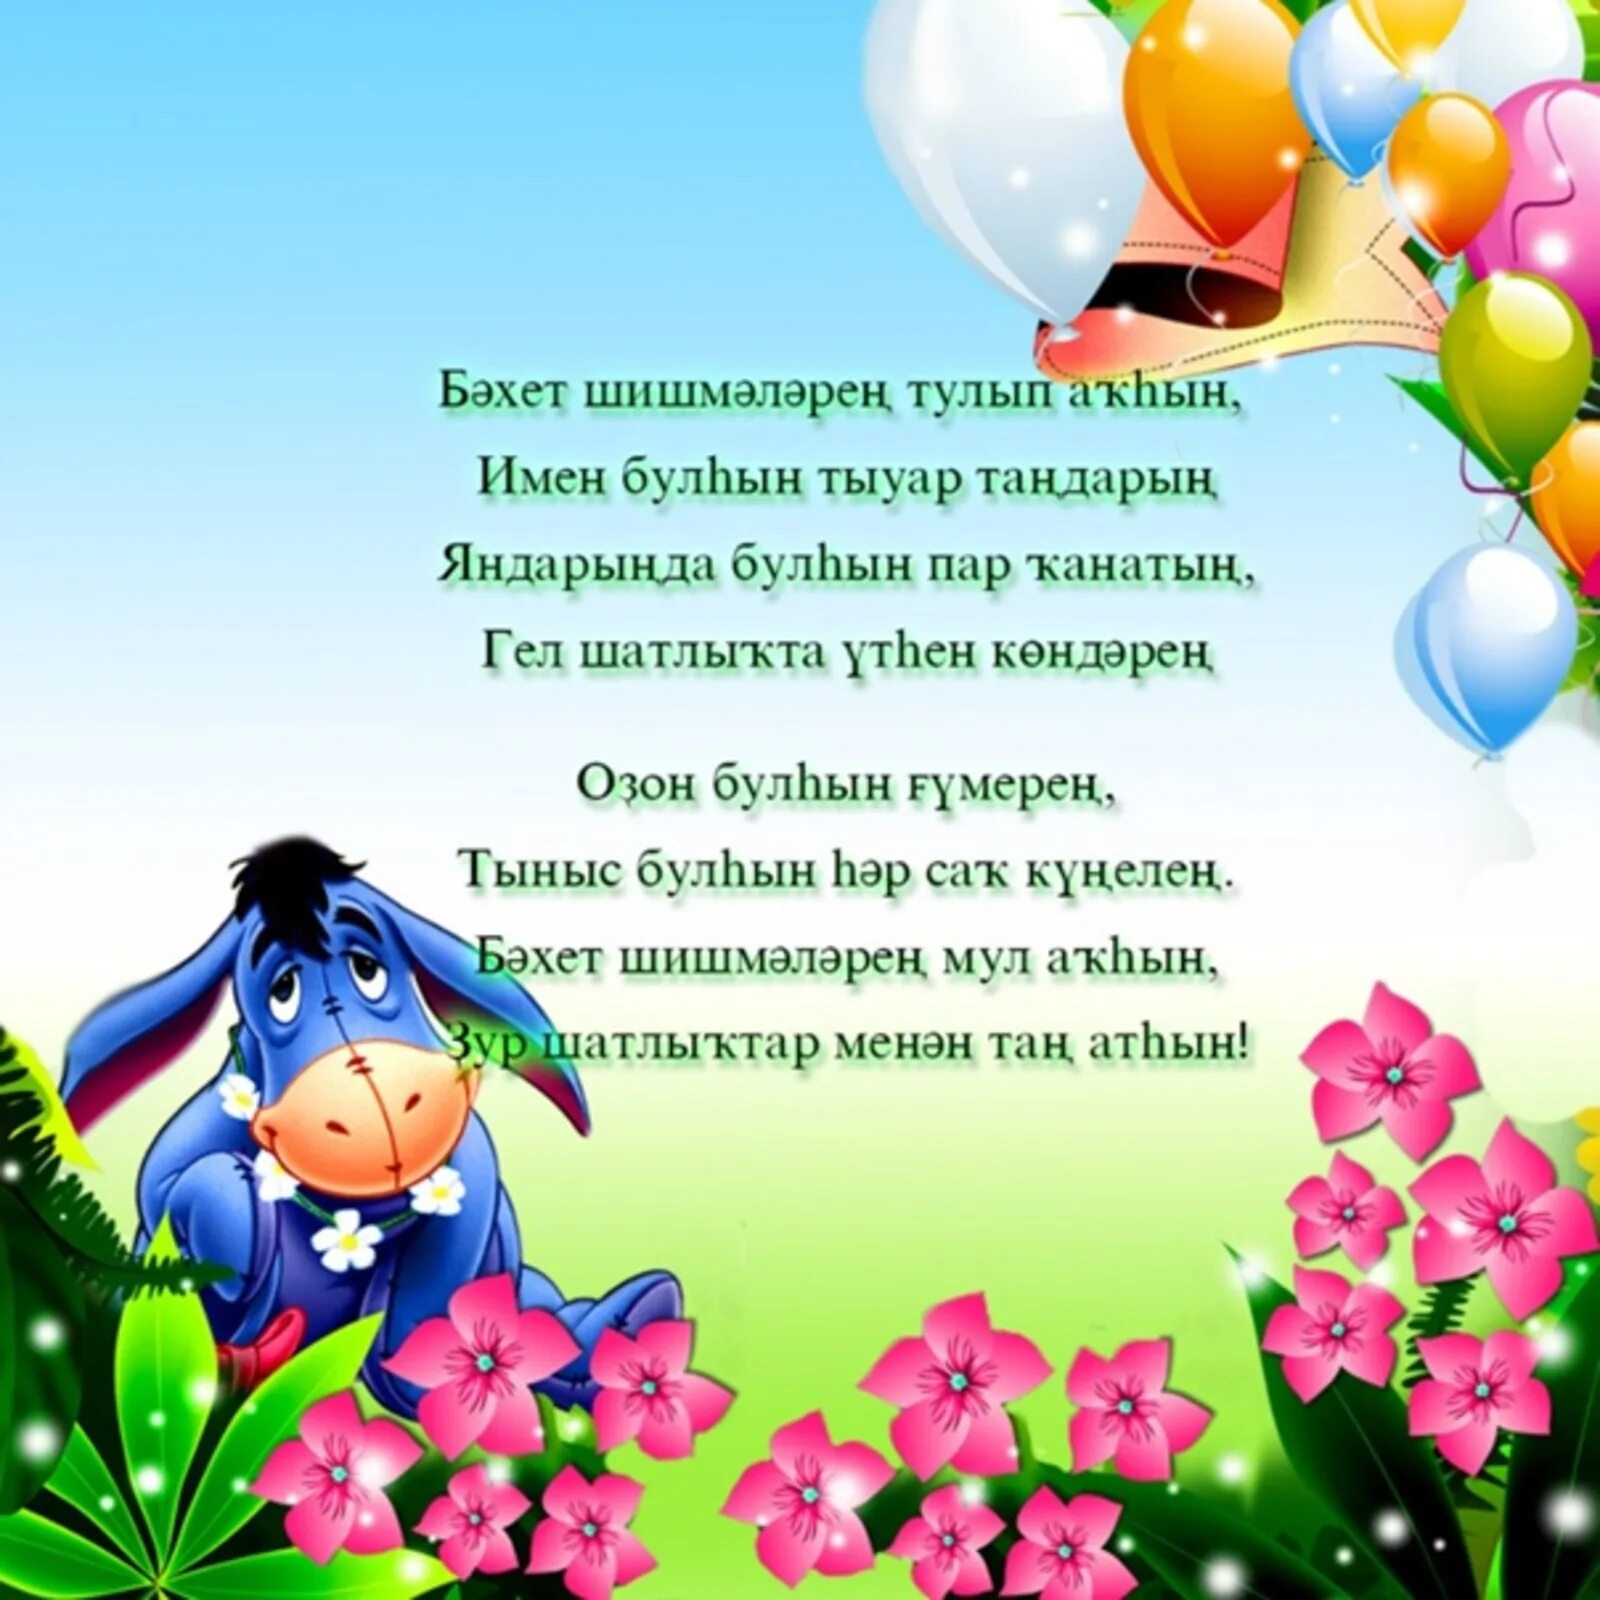 Поздравление сестры на башкирском языке. Поздравления с днём рождения на башкирском языке. Поздравления с днём рождения женщине на башкирском языке. Открытки с днём рождения на башкирском. Открытки на башкирском языке.